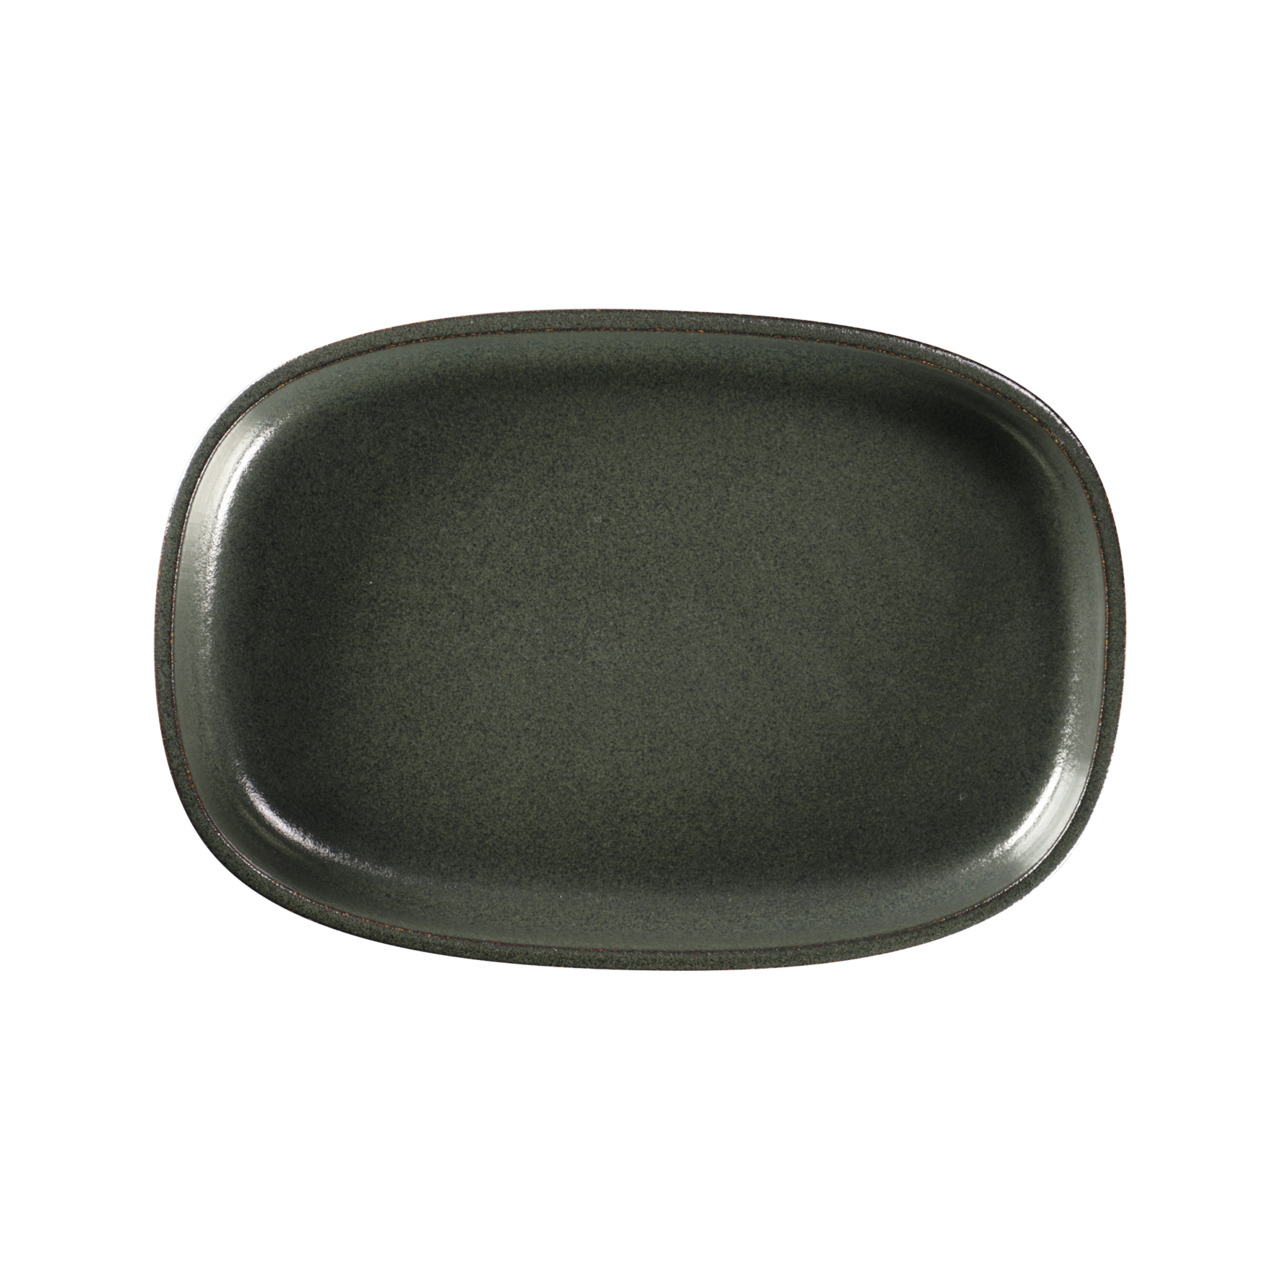 Ease, Platte oval tief 300 x 204 mm / 1,50 l caldera green